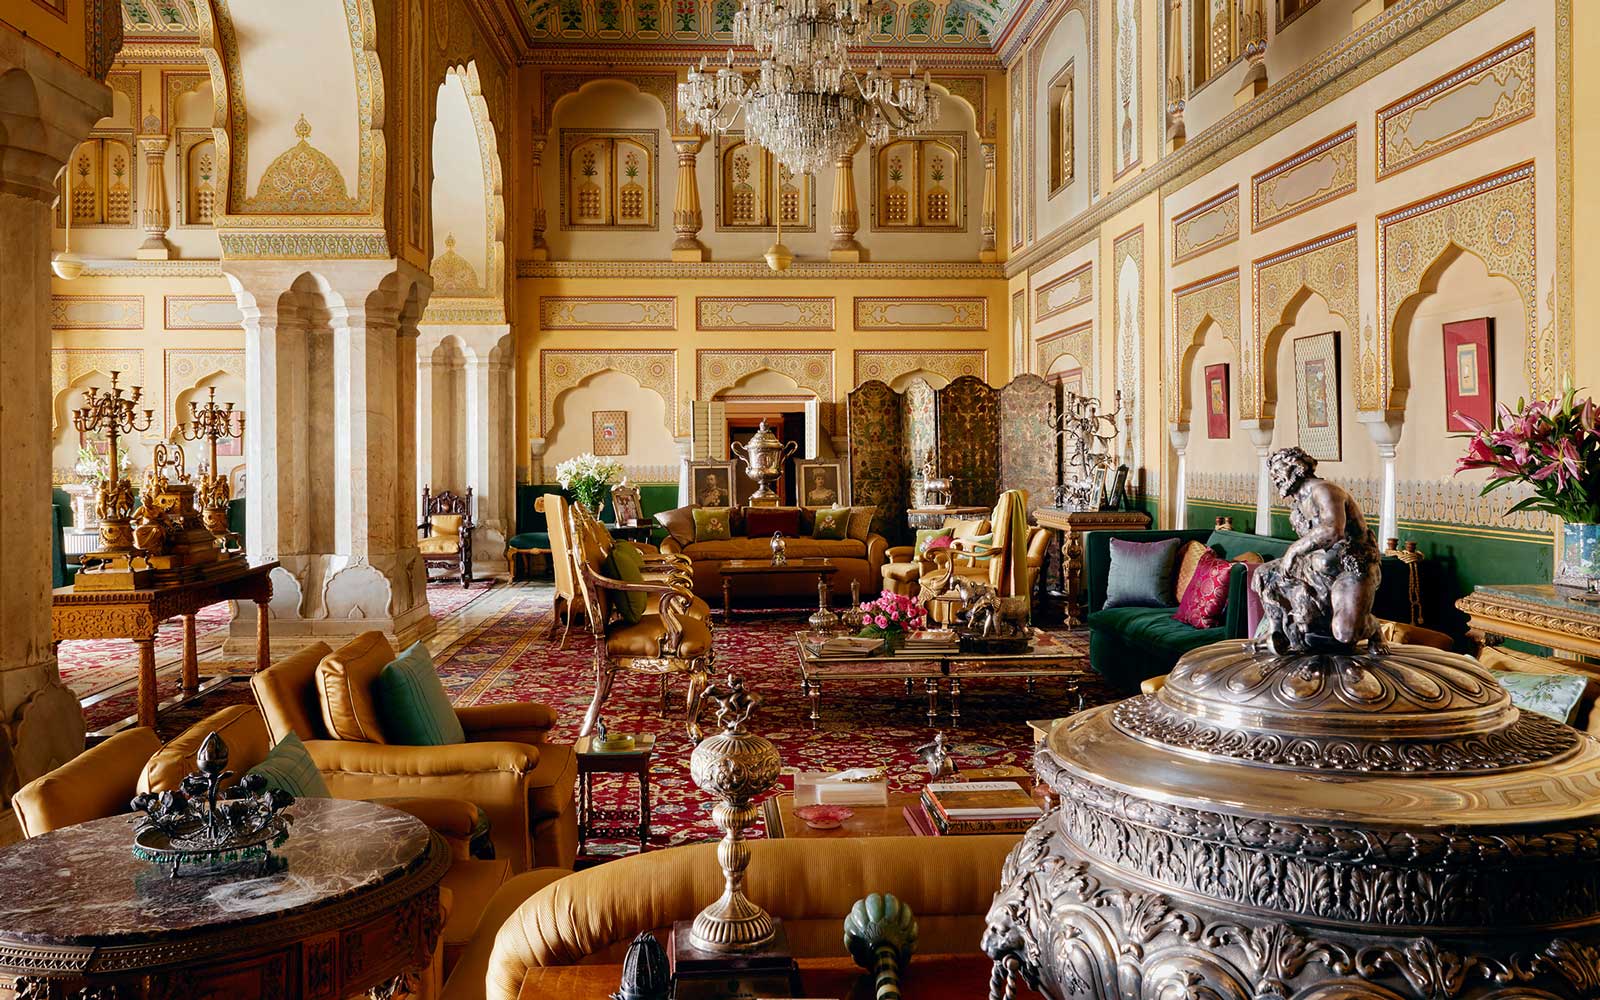 Hậu duệ hoàng gia cho thuê cung điện trên Airbnb